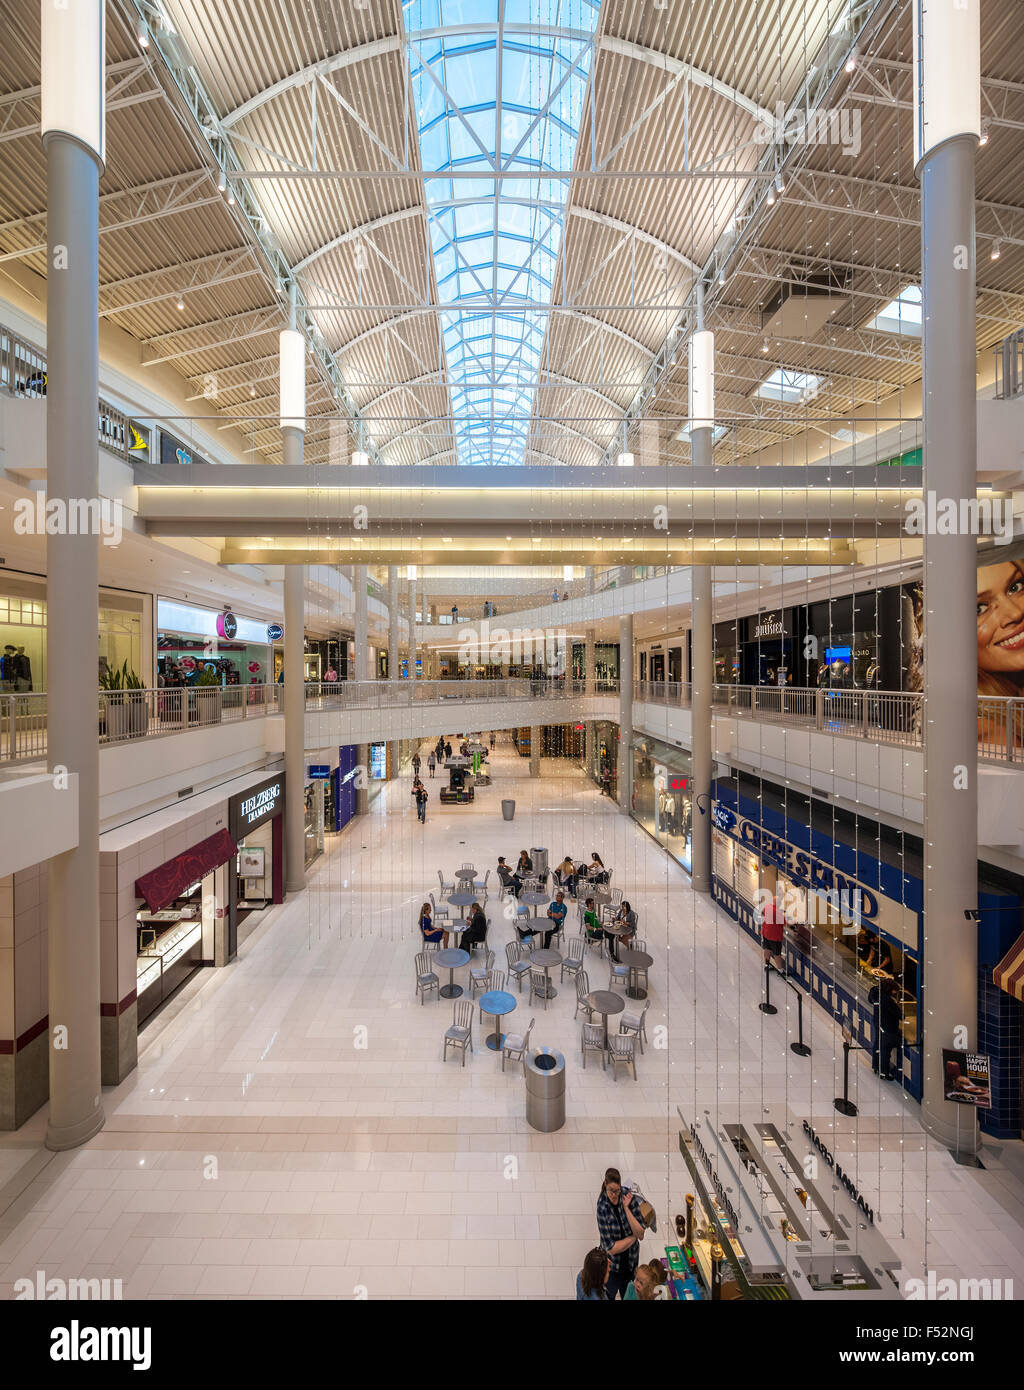 Minneapolis Mall of America interni. Il centro commerciale Mall of America (MoA) è il più grande centro commerciale negli Stati Uniti Foto Stock